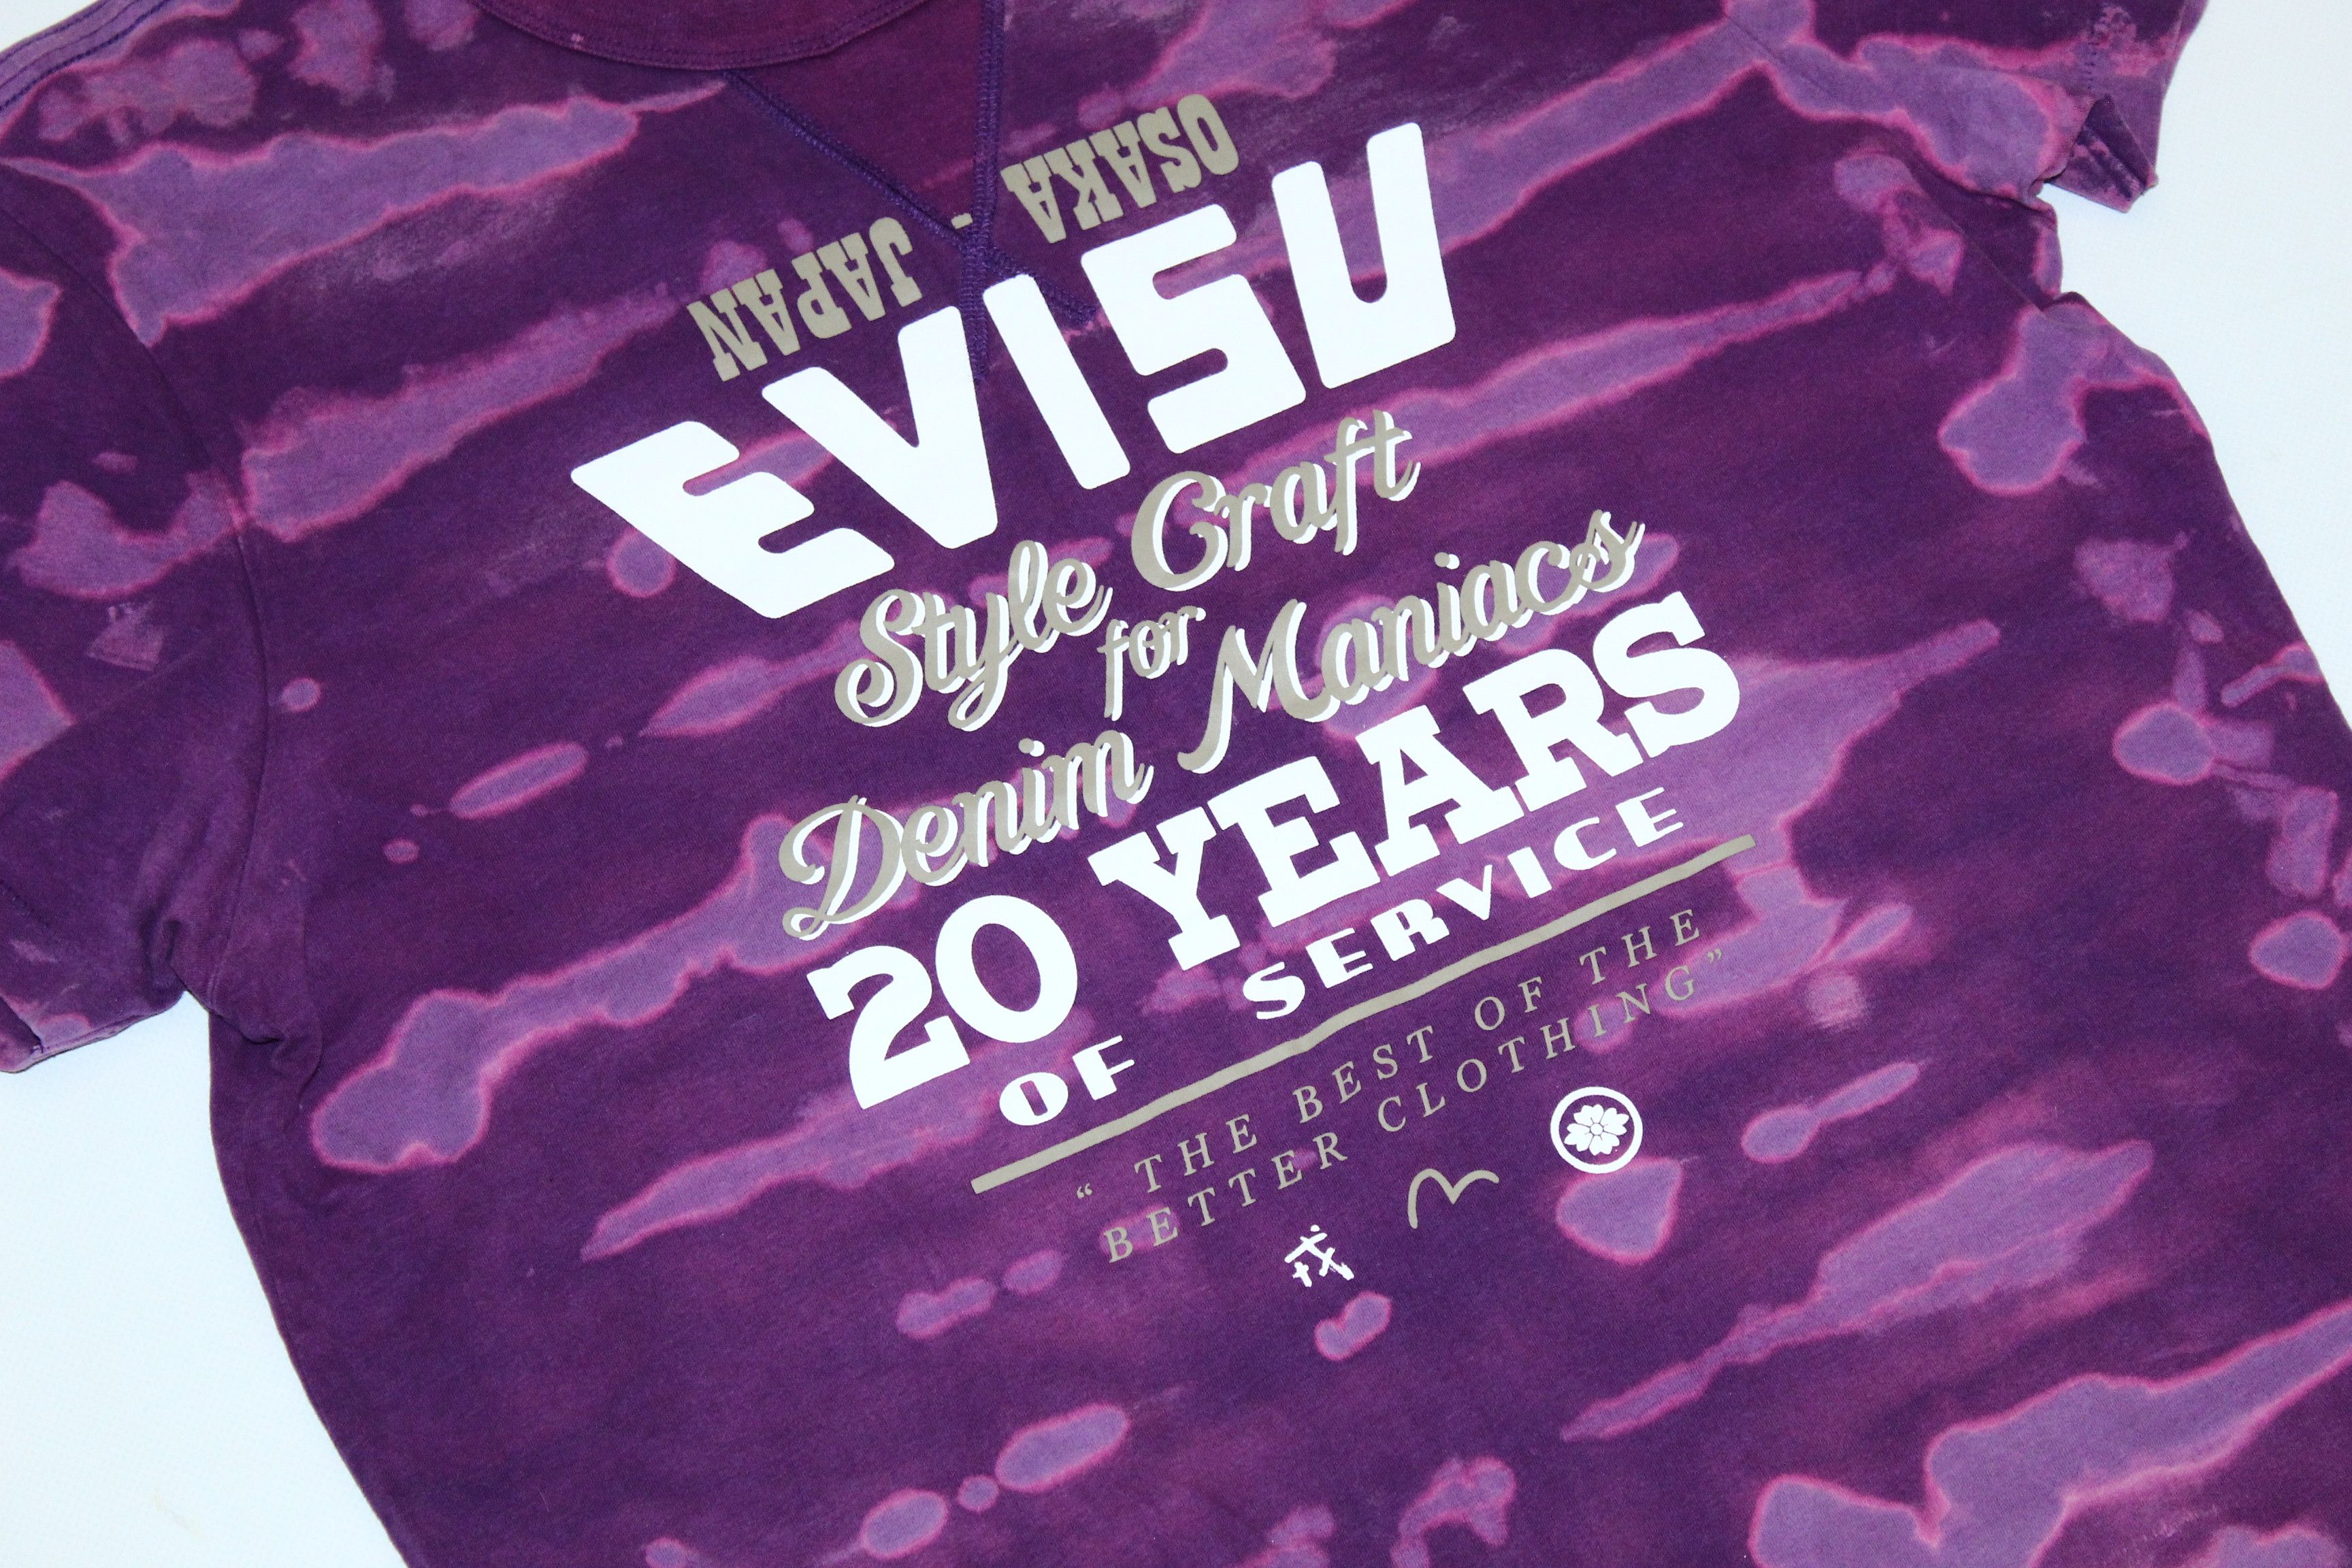 Vintage Vintage Evisu Denim Maniacs Fabric Dyed T-shirt Size US L / EU 52-54 / 3 - 2 Preview